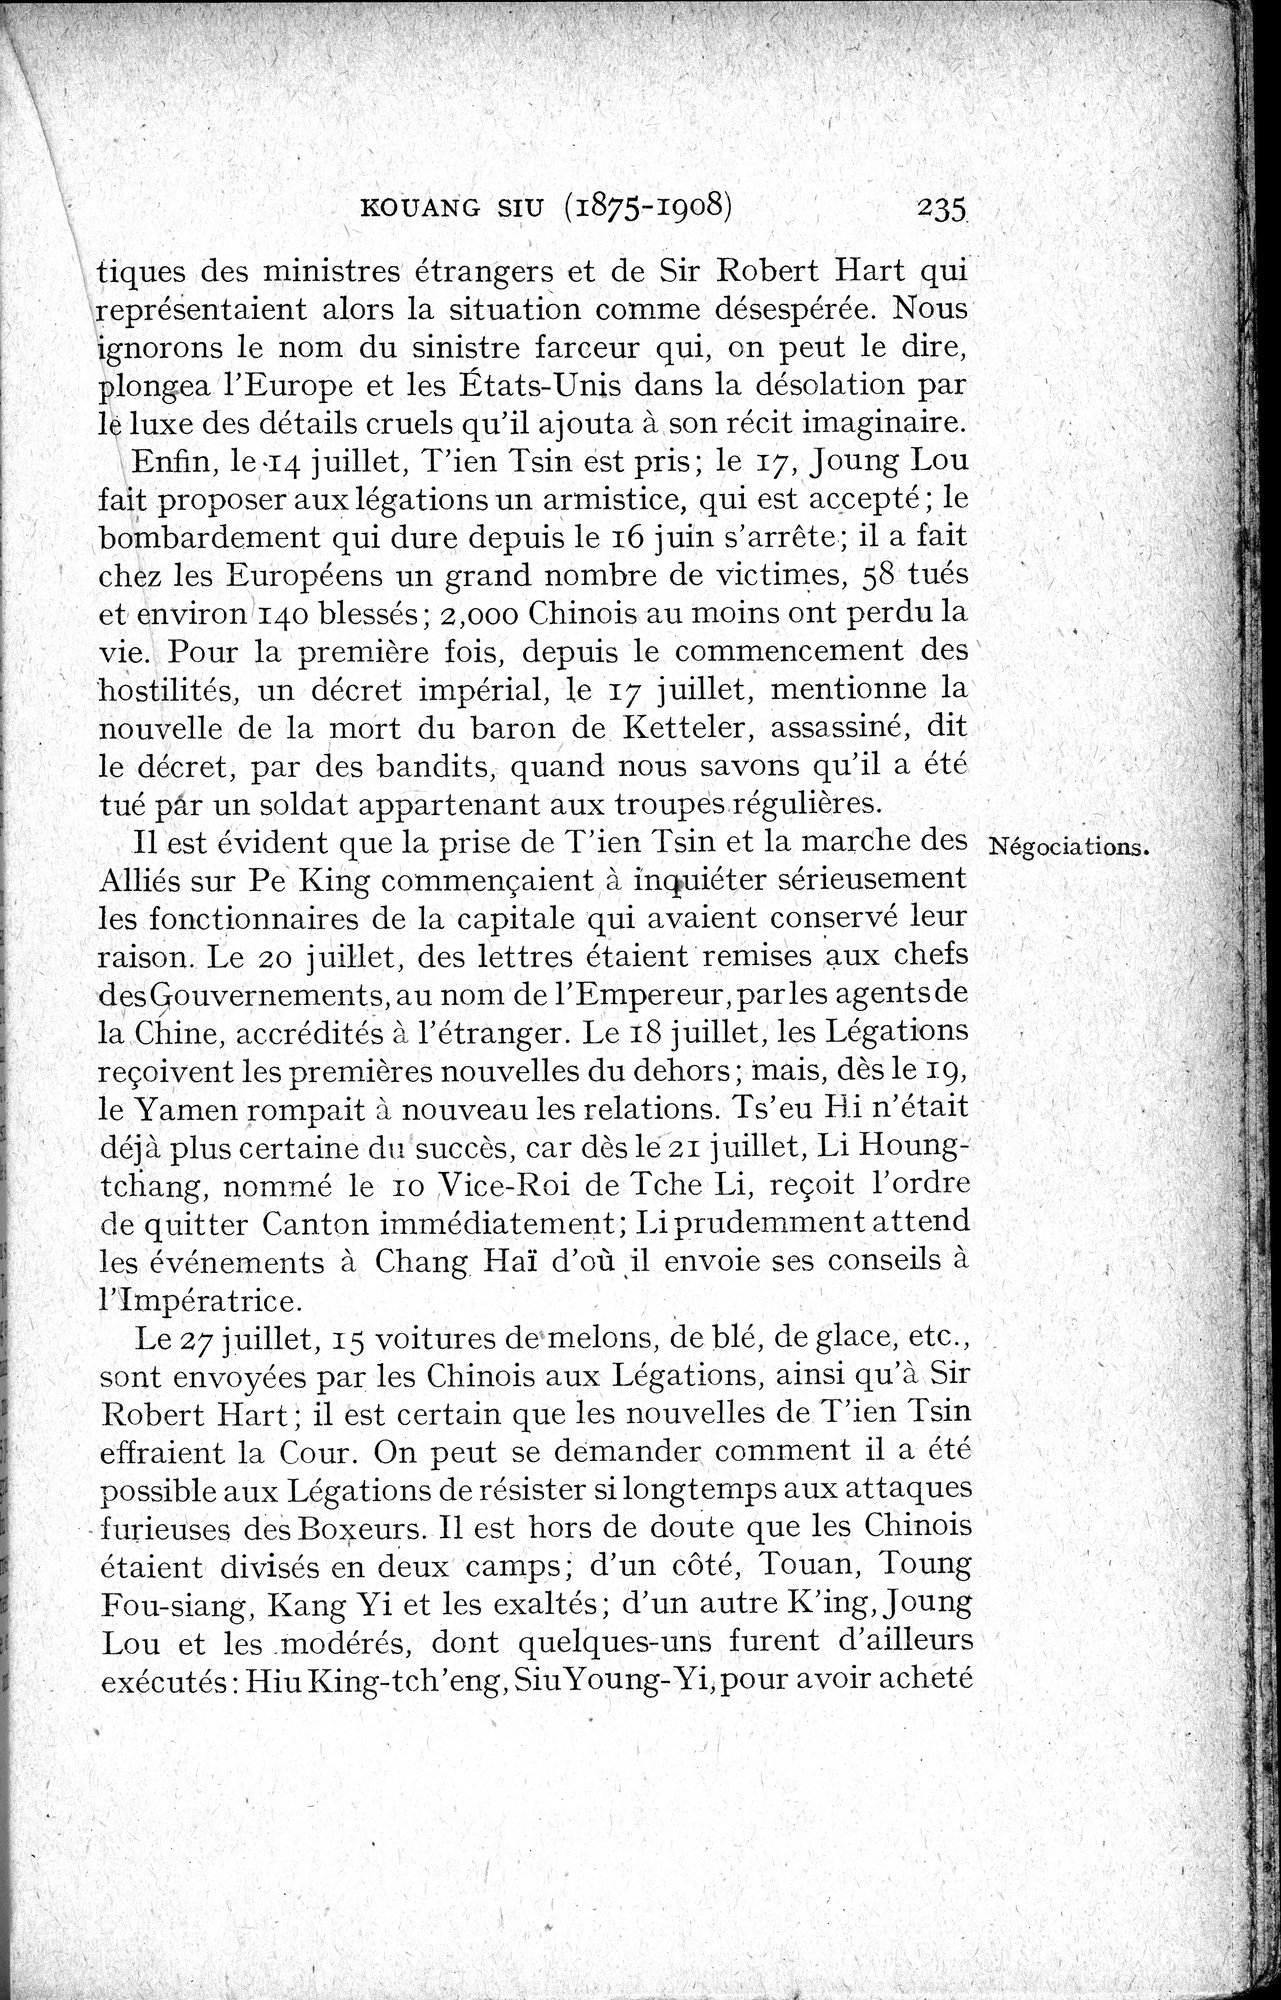 Histoire Générale de la Chine : vol.4 / Page 237 (Grayscale High Resolution Image)